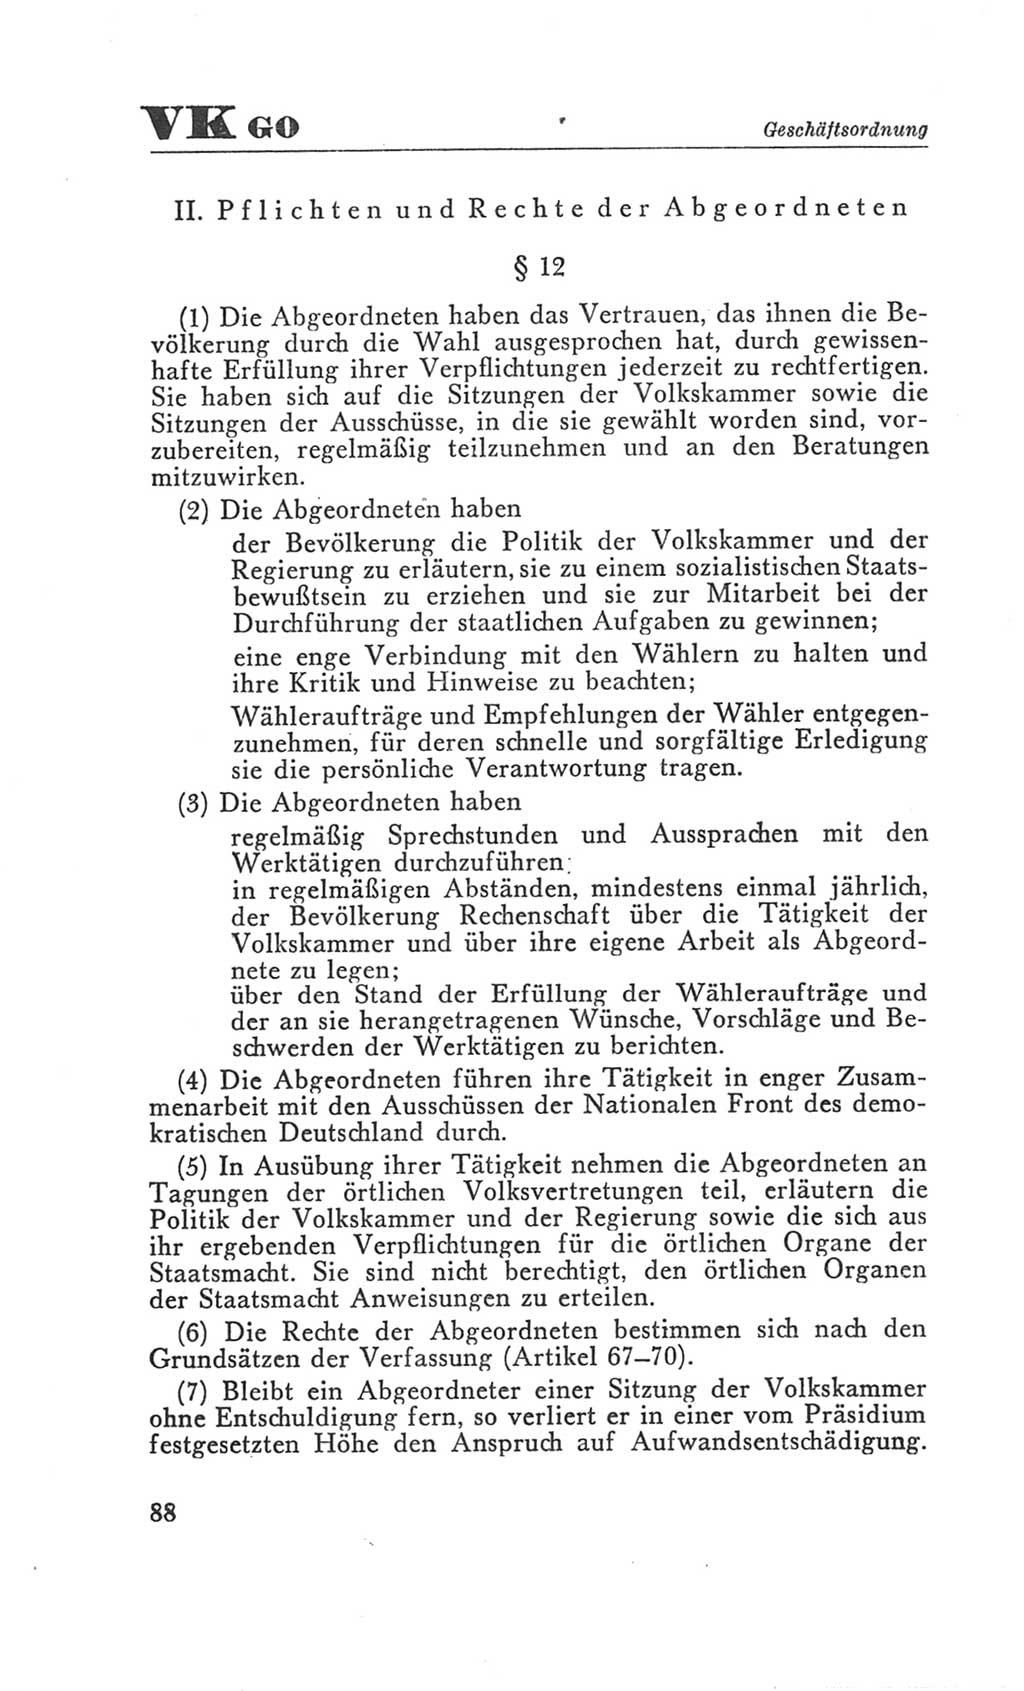 Handbuch der Volkskammer (VK) der Deutschen Demokratischen Republik (DDR), 3. Wahlperiode 1958-1963, Seite 88 (Hdb. VK. DDR 3. WP. 1958-1963, S. 88)